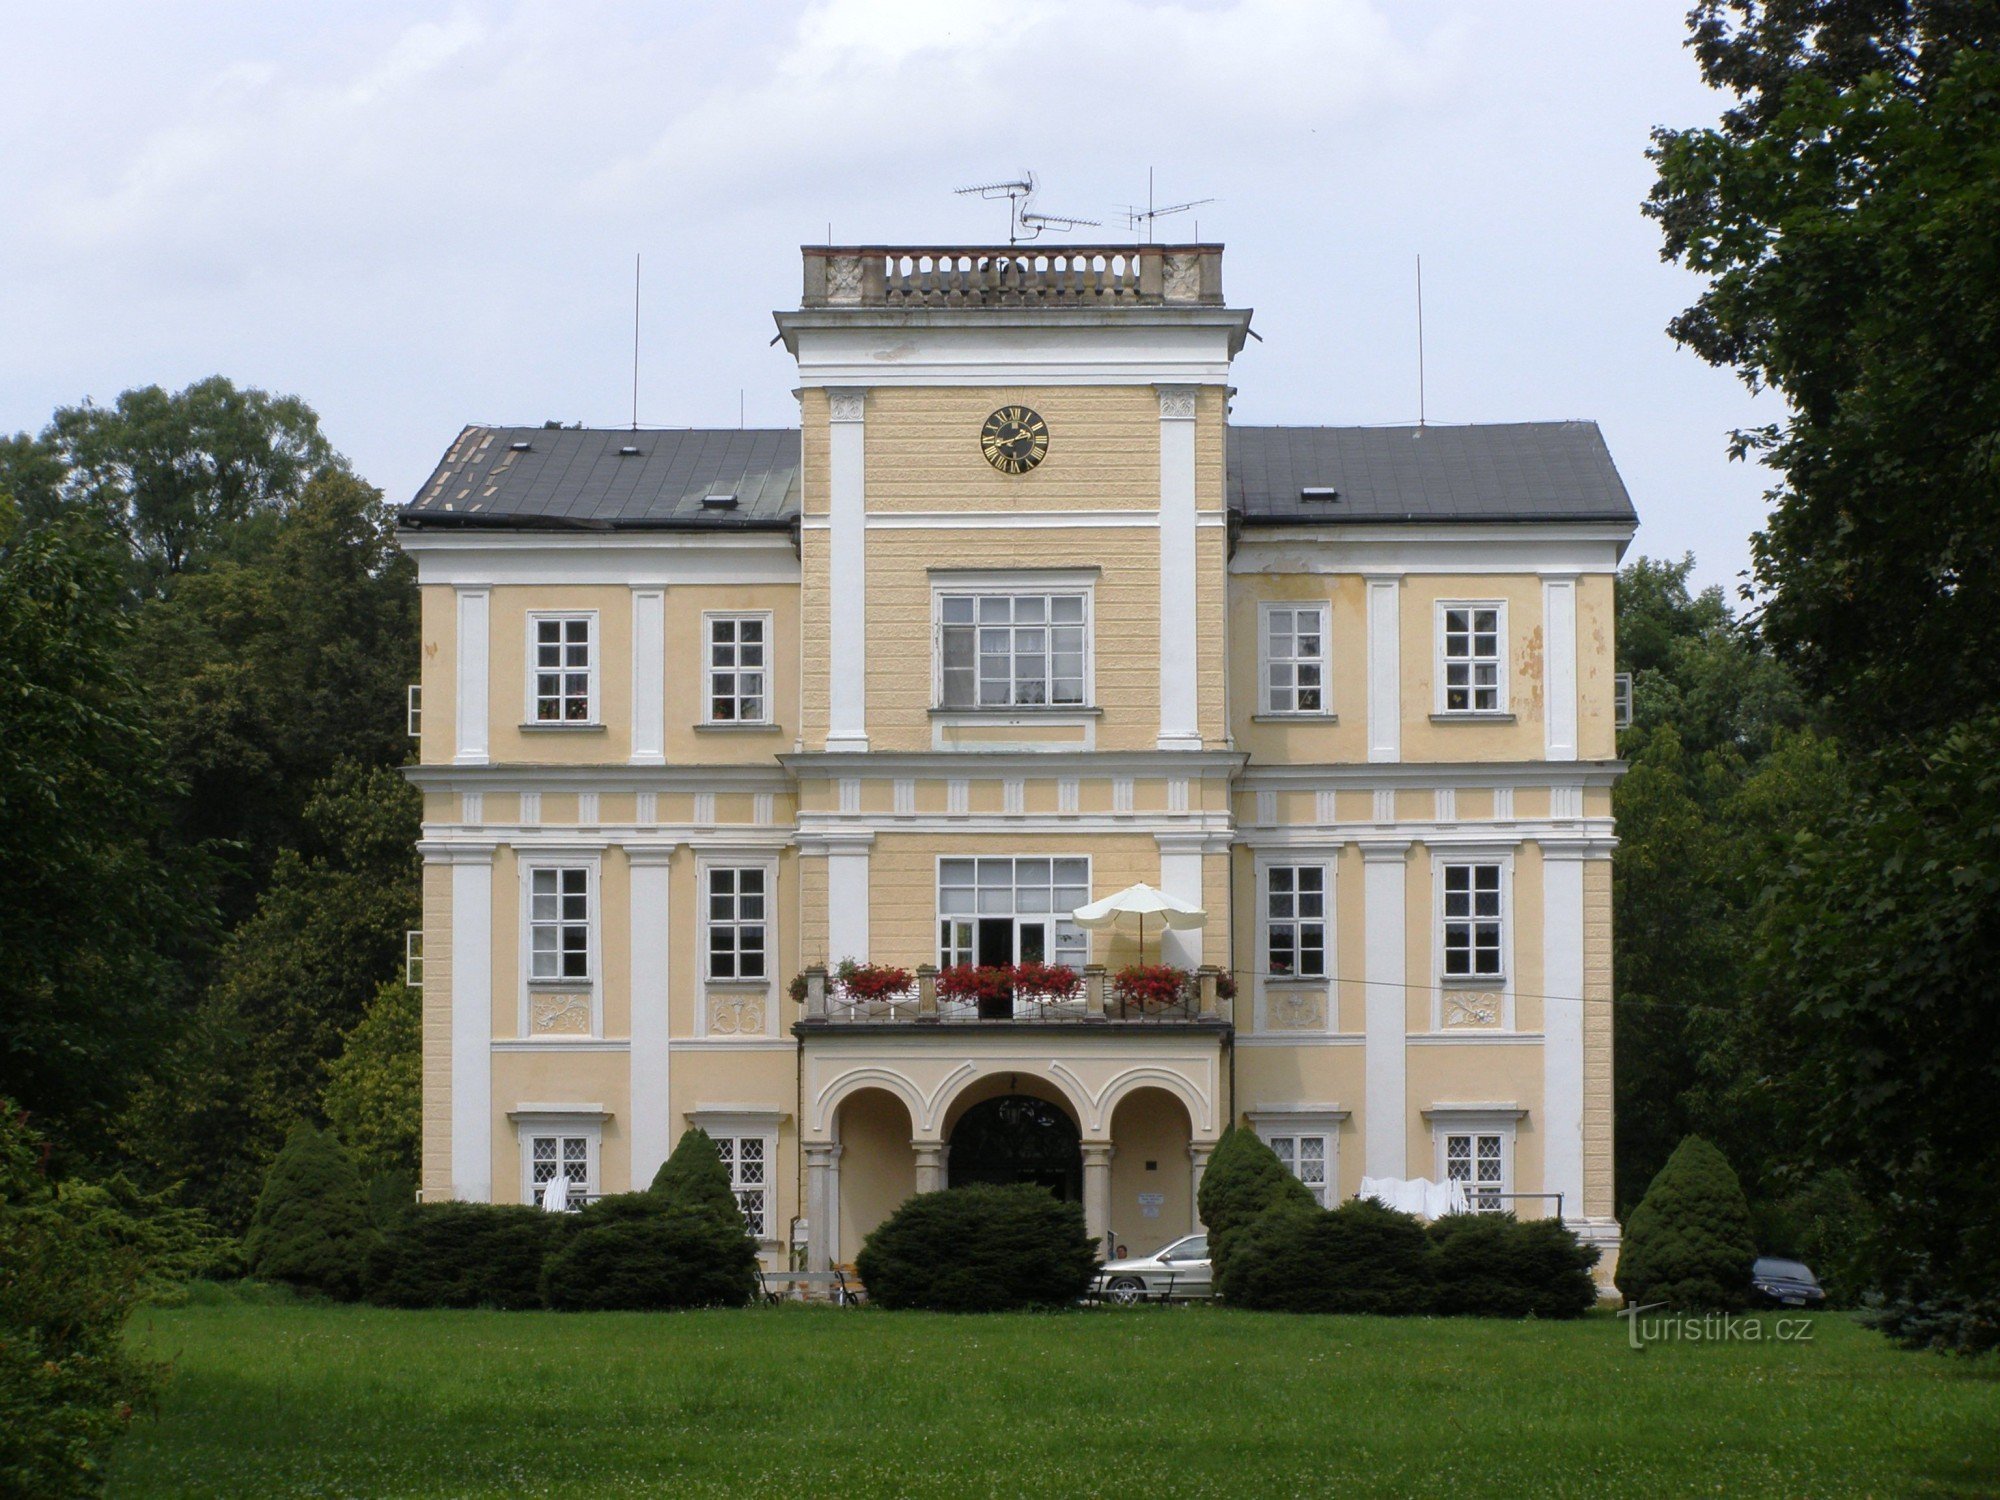 Miličeves - castle